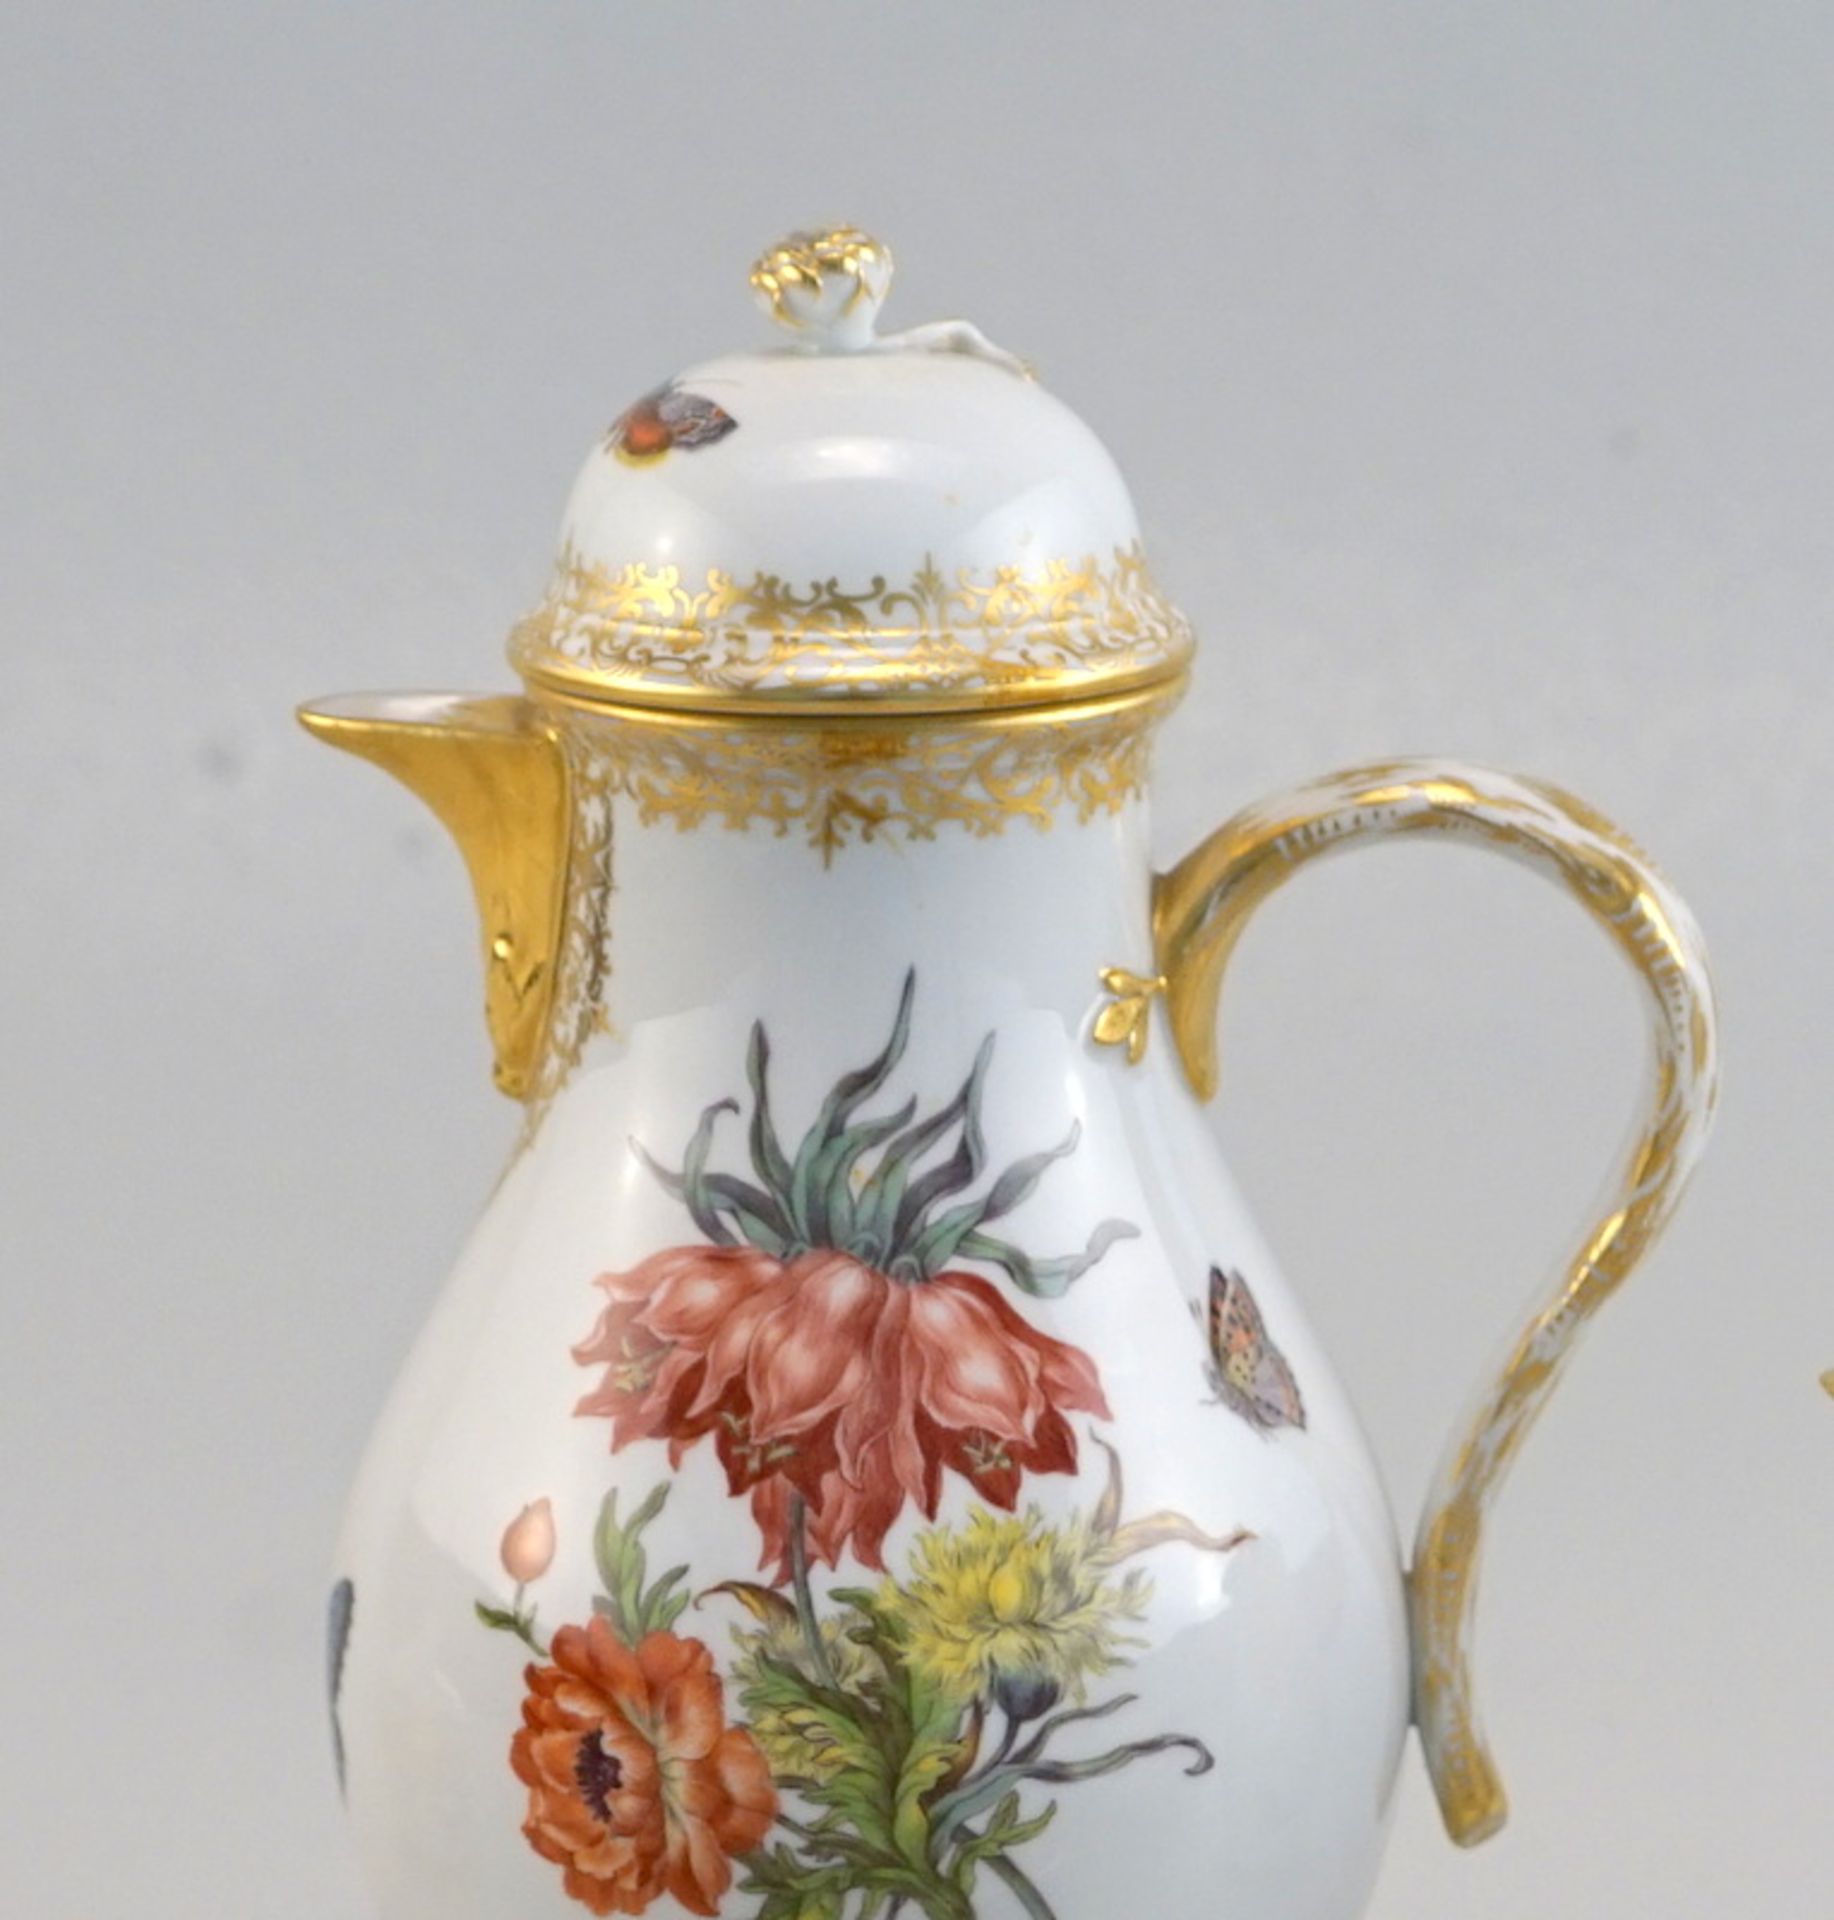 Staatlich Meissen: Feines Kaffeeservice, Form des 18.Jhd. reiche Malerei mit Blumen und Faltern - Image 2 of 4